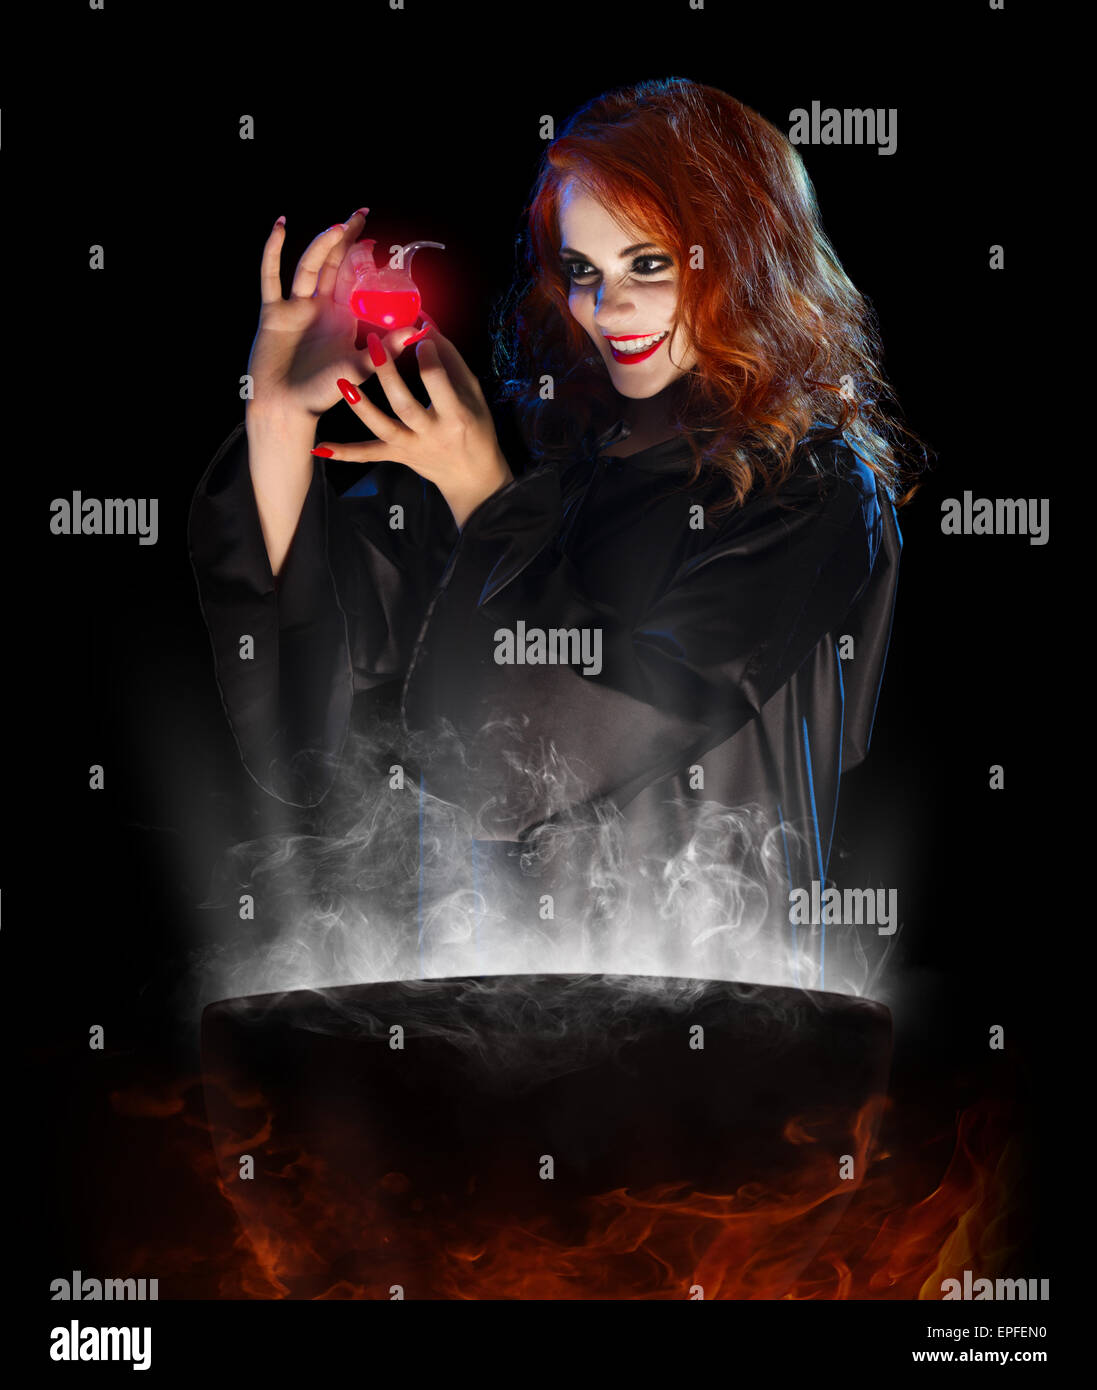 Jeune sorcière avec red potion et chaudron isolated Banque D'Images